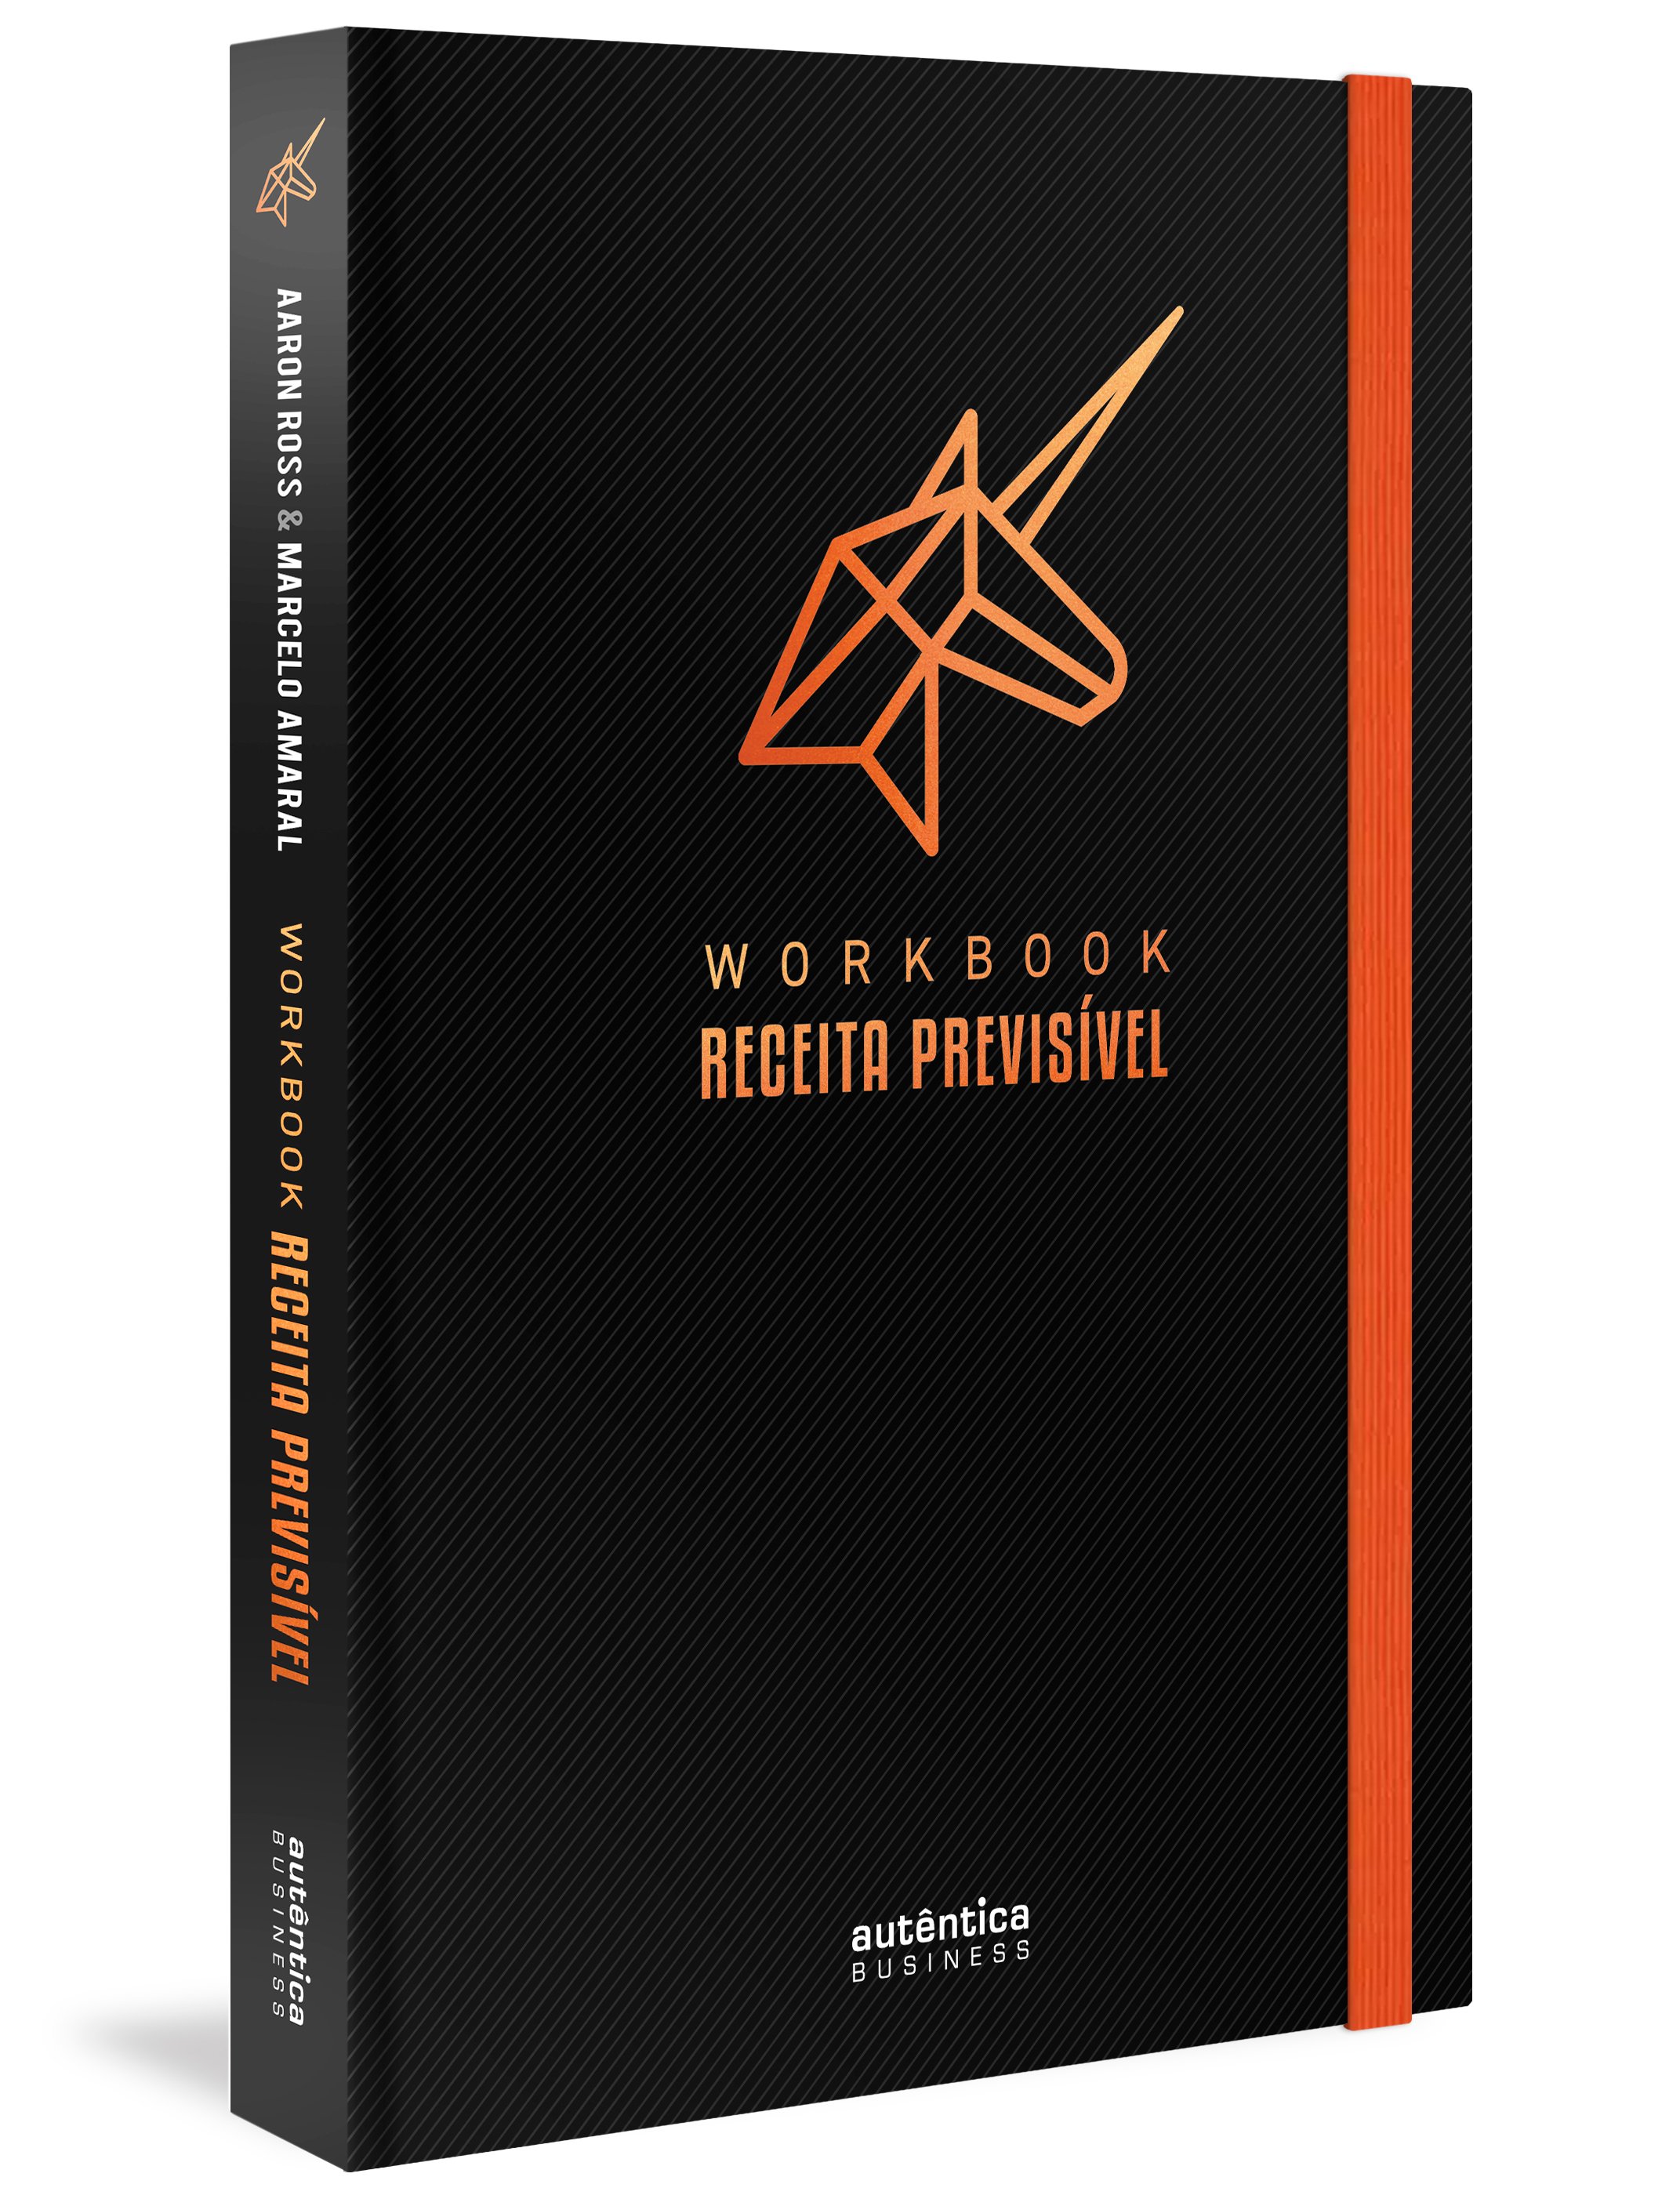 Workbook Receita Previsível: Um Guia Passo a Passo para Implementar a Metodologia de Receita Previsí